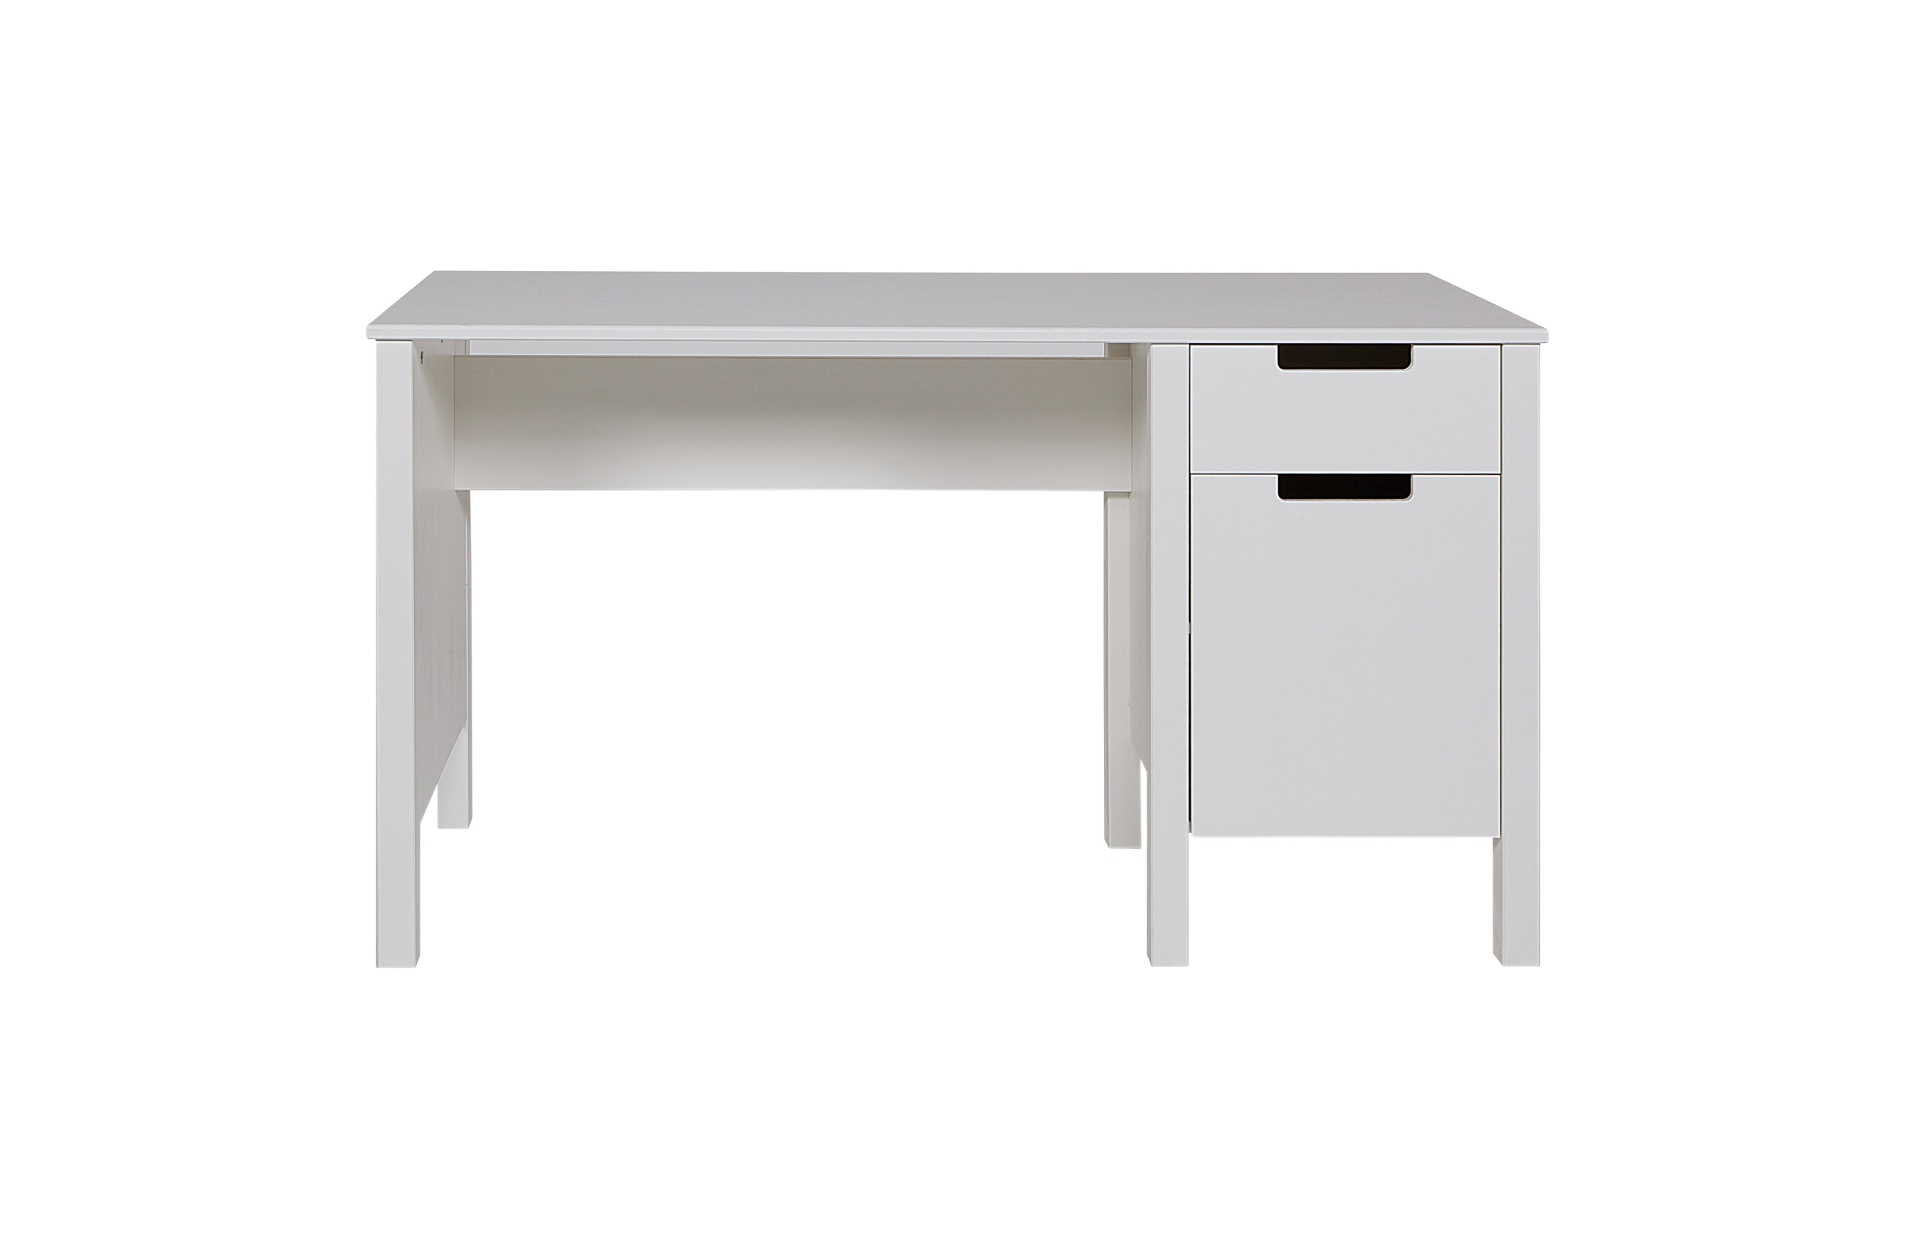 Der Schreibtisch Jade wurde aus Kiefernholz gefertigt und besitzt einen weißen Farbton. Der Tisch verfügt über eine Schublade und ein Tür für Stauraum.